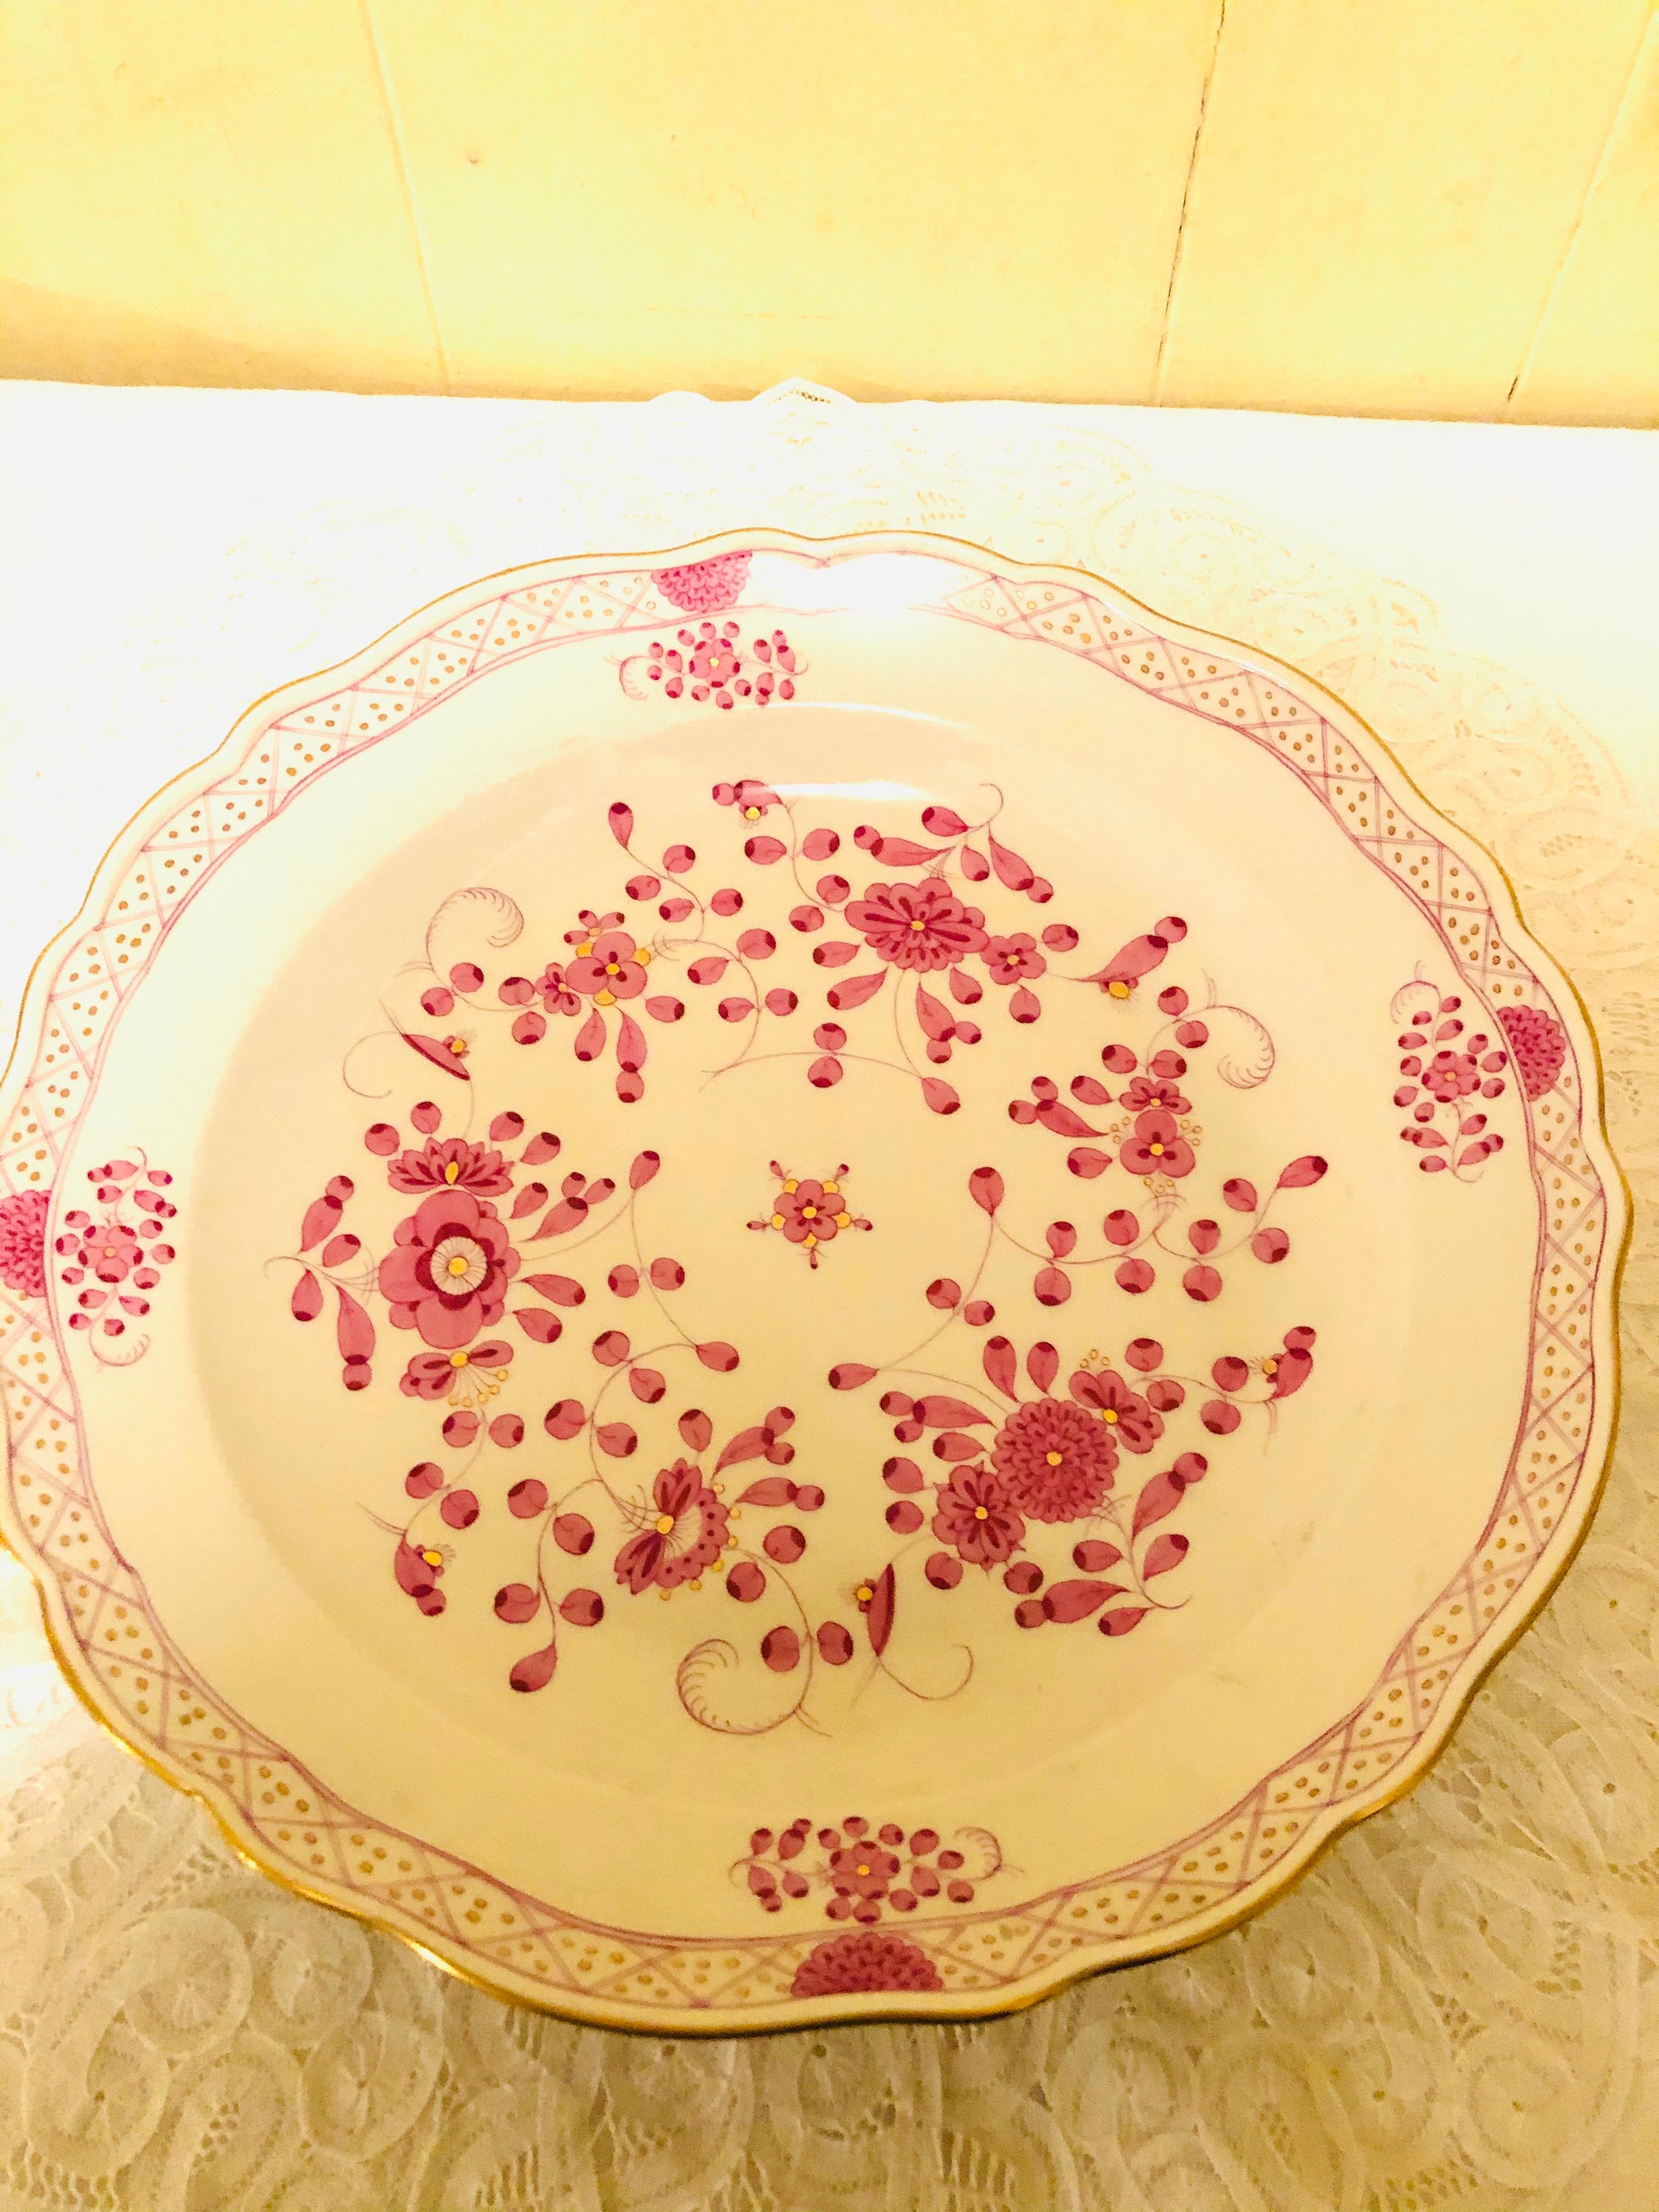 Ich möchte Ihnen diese schöne große runde Platte mit dem Meissener Purpur-Indianer-Muster anbieten. Es hat detaillierte Malereien von rosa Blumen mit einigen lila und goldenen Akzenten auf weißem Grund. Die Details der Malerei auf dieser runden